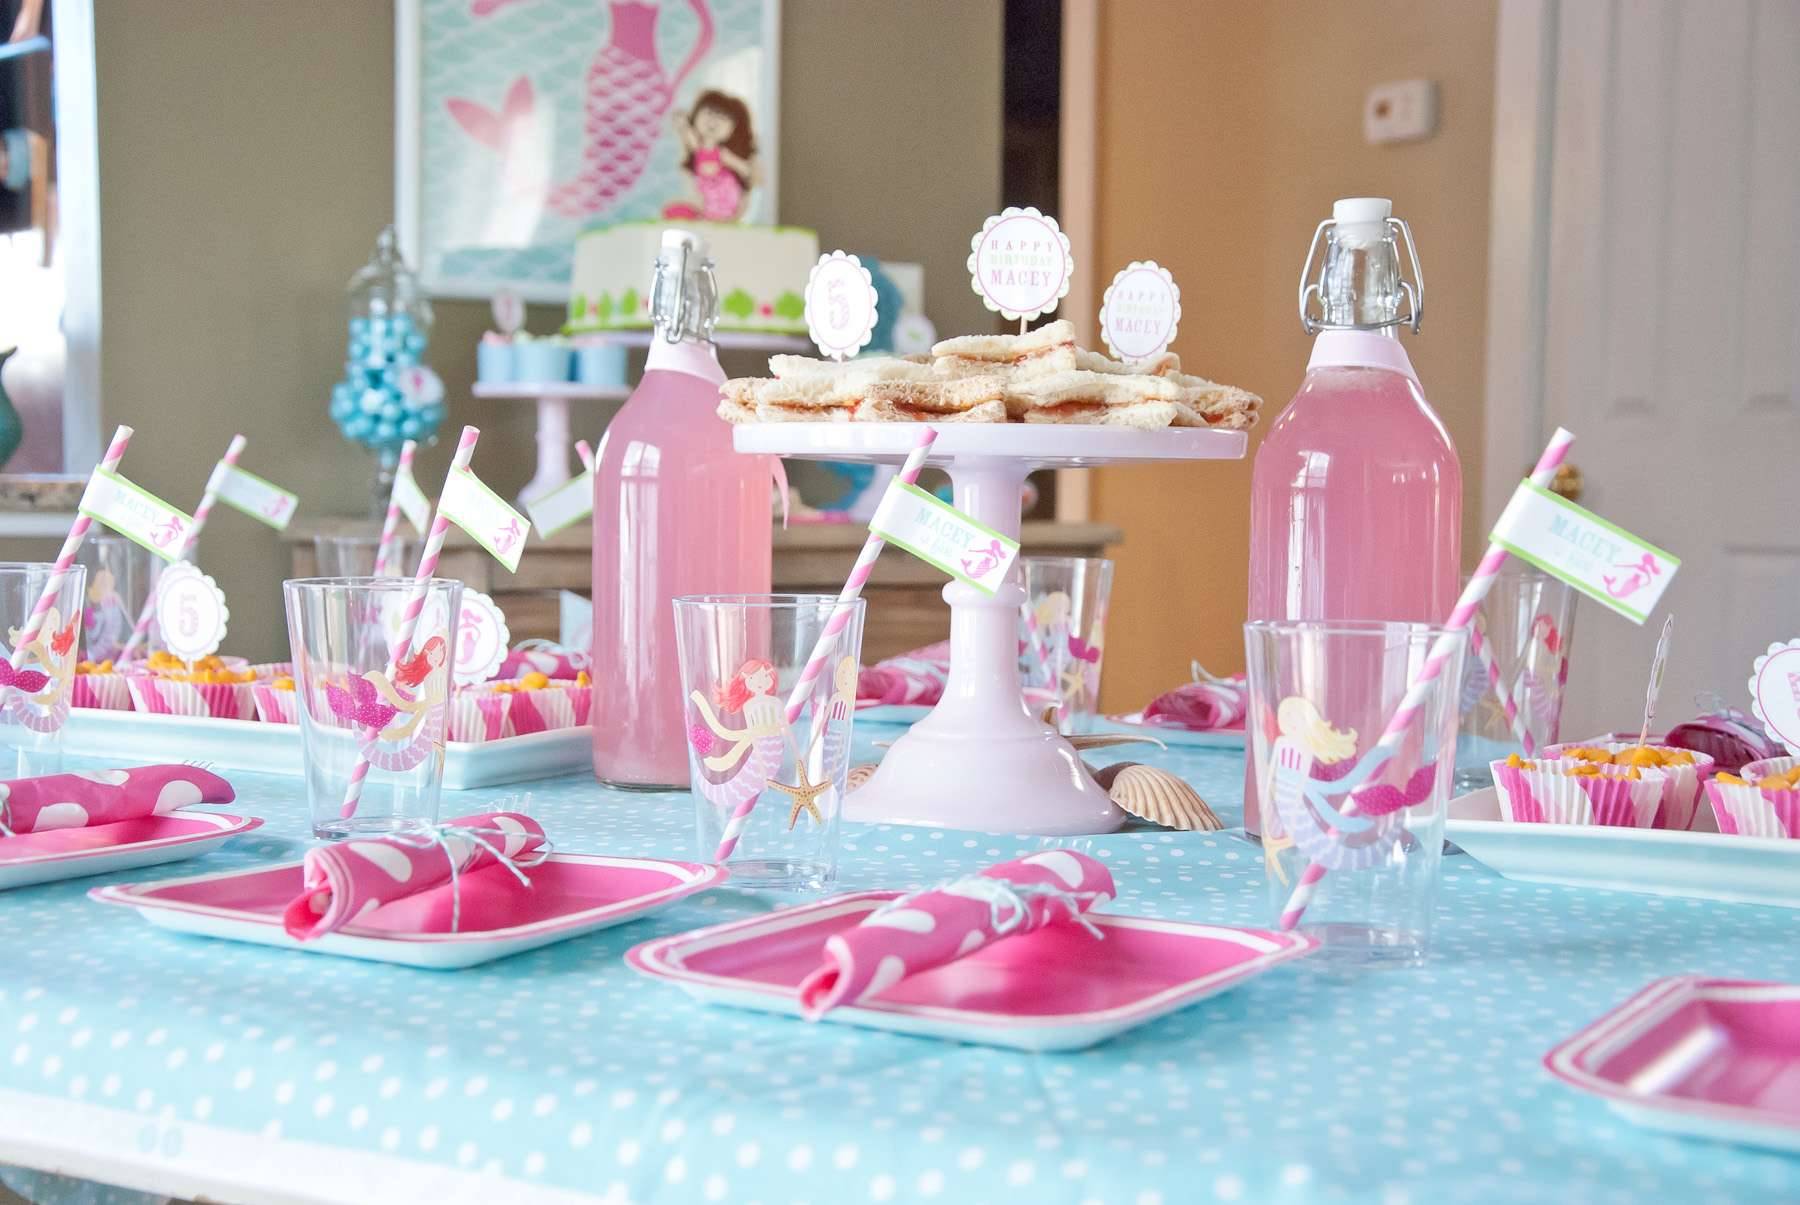 Сервировка стола на день рождения: как красиво накрыть праздничный стол